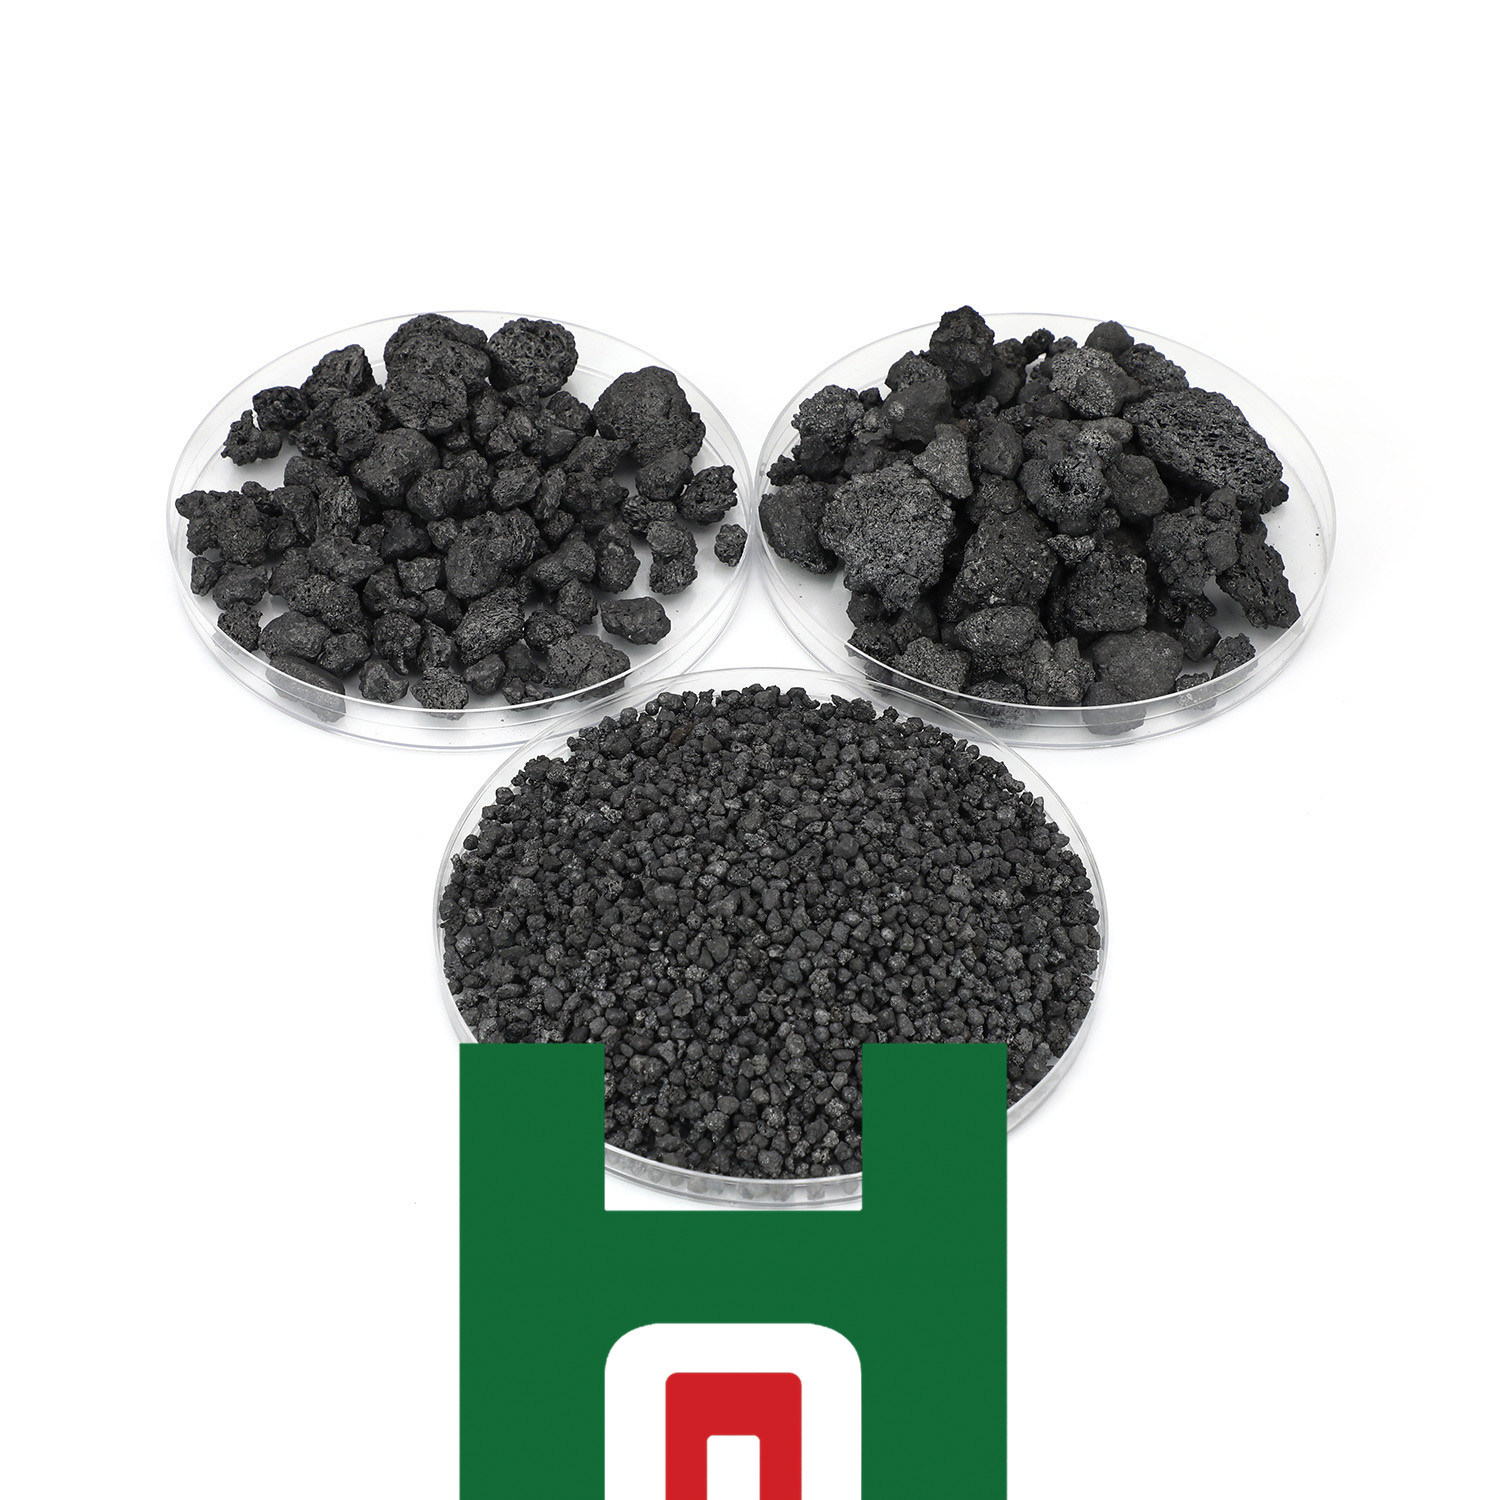 Çelik üretimi fiyatı için karbon katkılı kalsine antrasit kömürü satın al,Çelik üretimi fiyatı için karbon katkılı kalsine antrasit kömürü Fiyatlar,Çelik üretimi fiyatı için karbon katkılı kalsine antrasit kömürü Markalar,Çelik üretimi fiyatı için karbon katkılı kalsine antrasit kömürü Üretici,Çelik üretimi fiyatı için karbon katkılı kalsine antrasit kömürü Alıntılar,Çelik üretimi fiyatı için karbon katkılı kalsine antrasit kömürü Şirket,